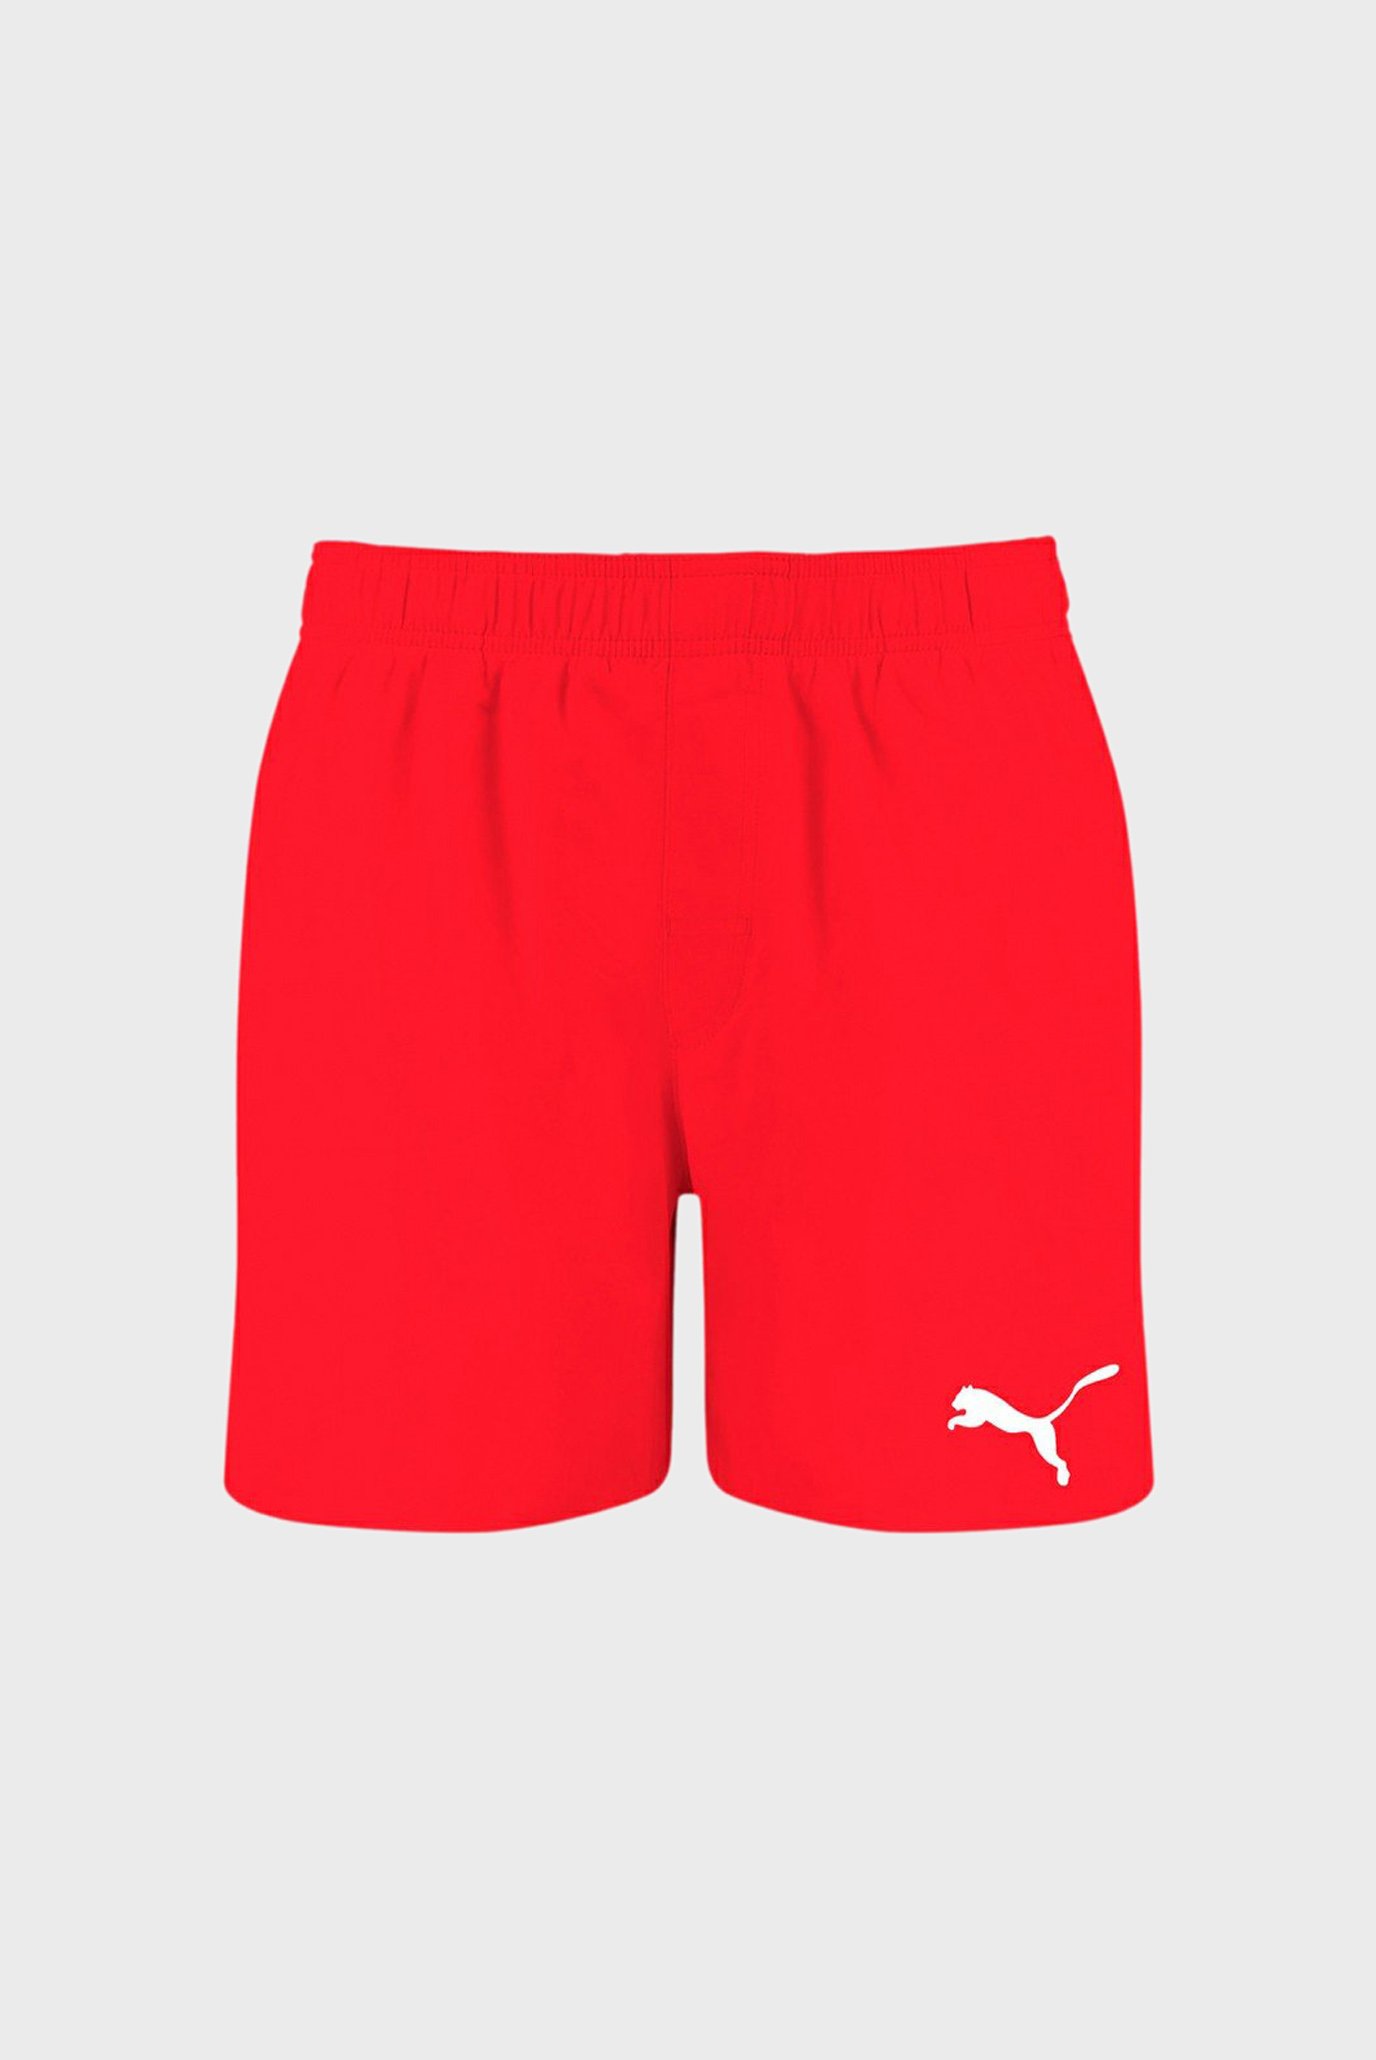 Чоловічі червоні плавальні шорти Swim Men’s Mid Shorts 1